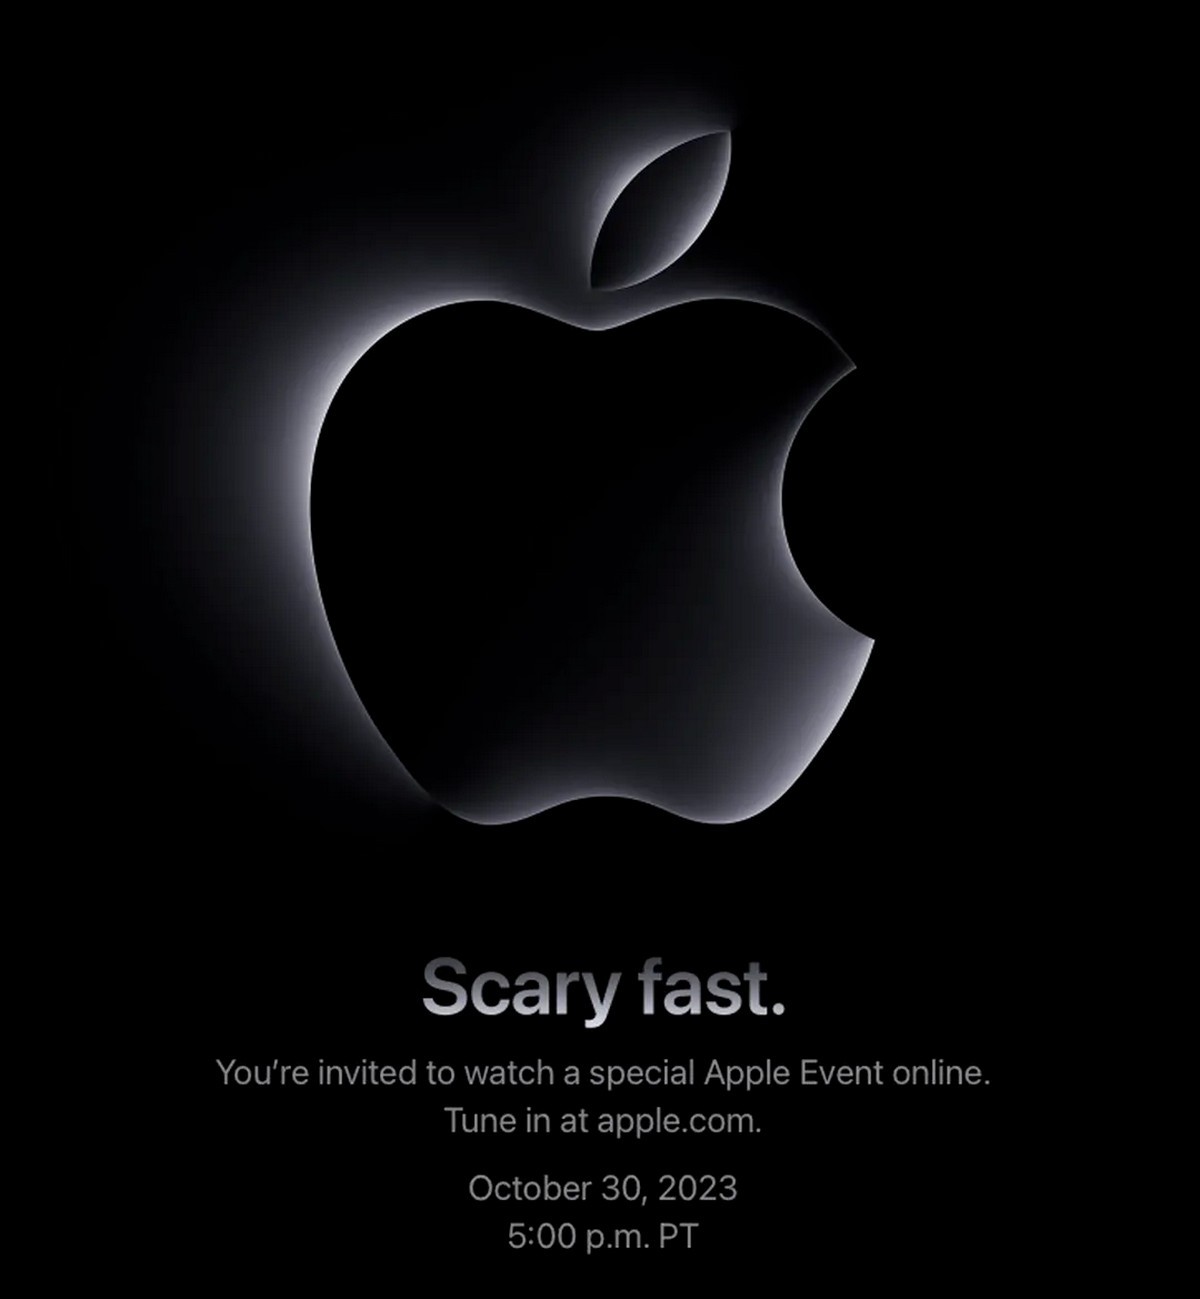 Apple anuncia evento ''Scary fast'' para 30 de outubro, novos Macs esperados